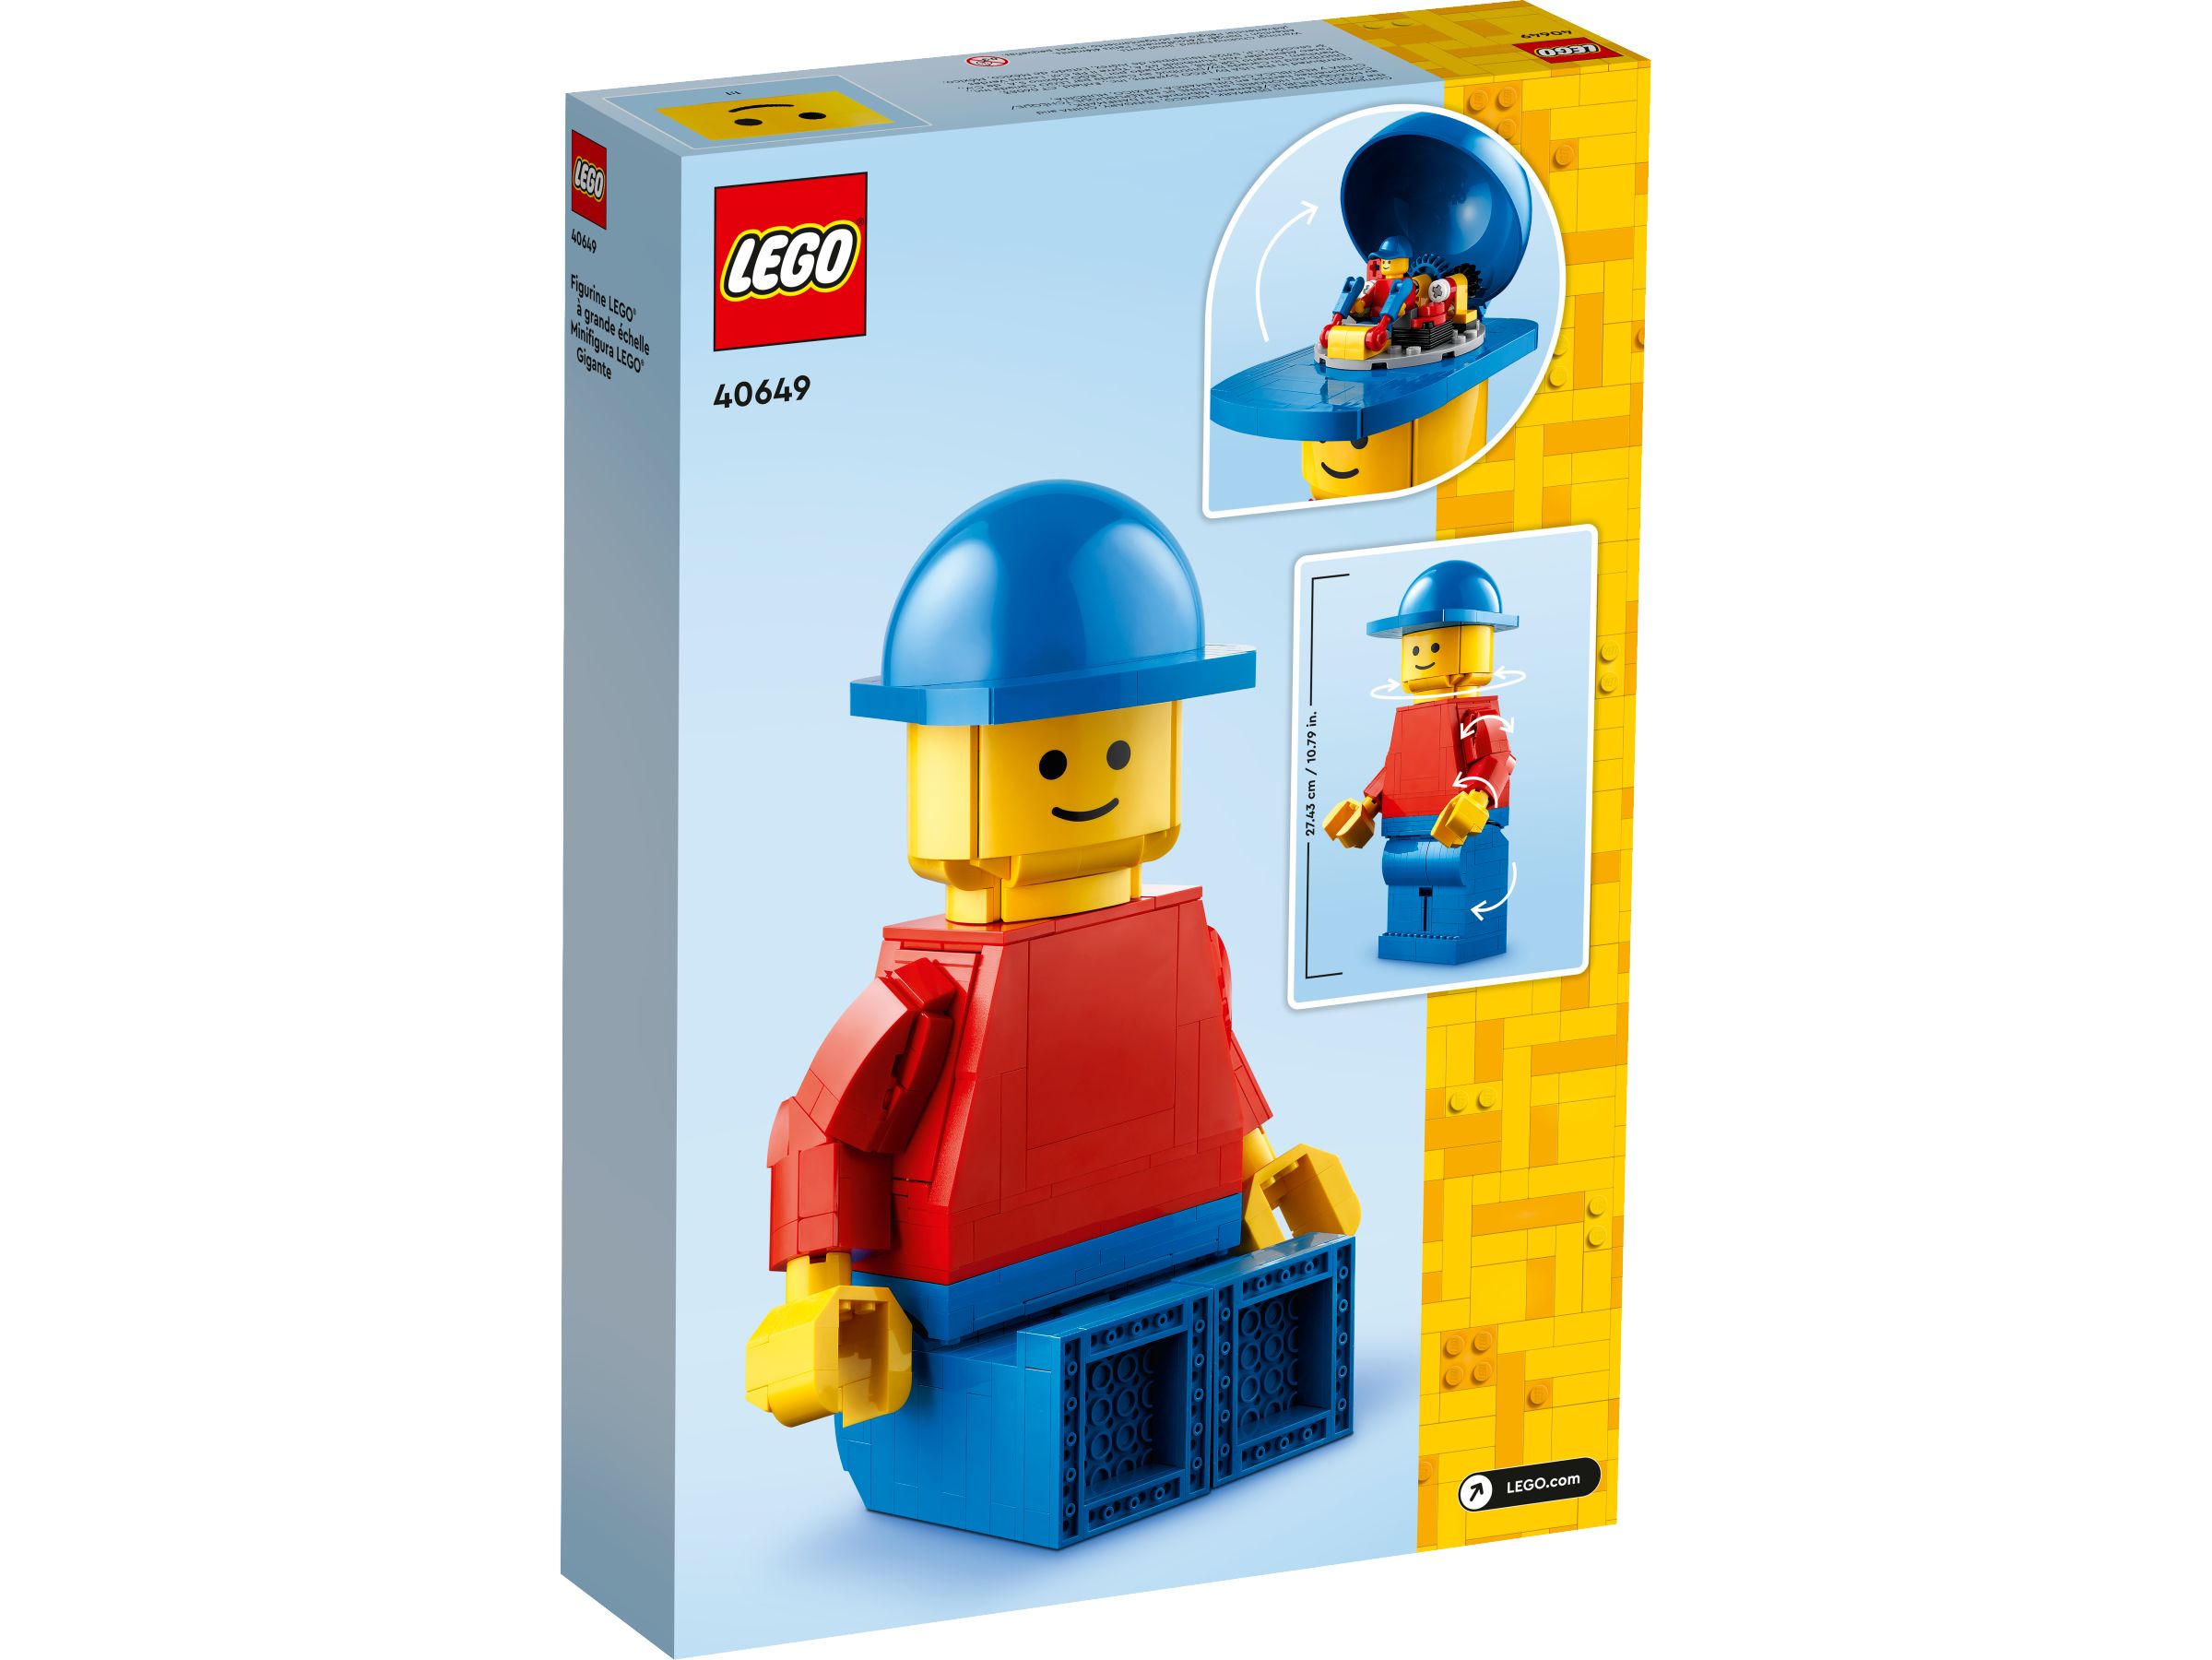 LEGO Miscellaneous 40649 Große LEGO® Minifigur LEGO_40649_alt2.jpg